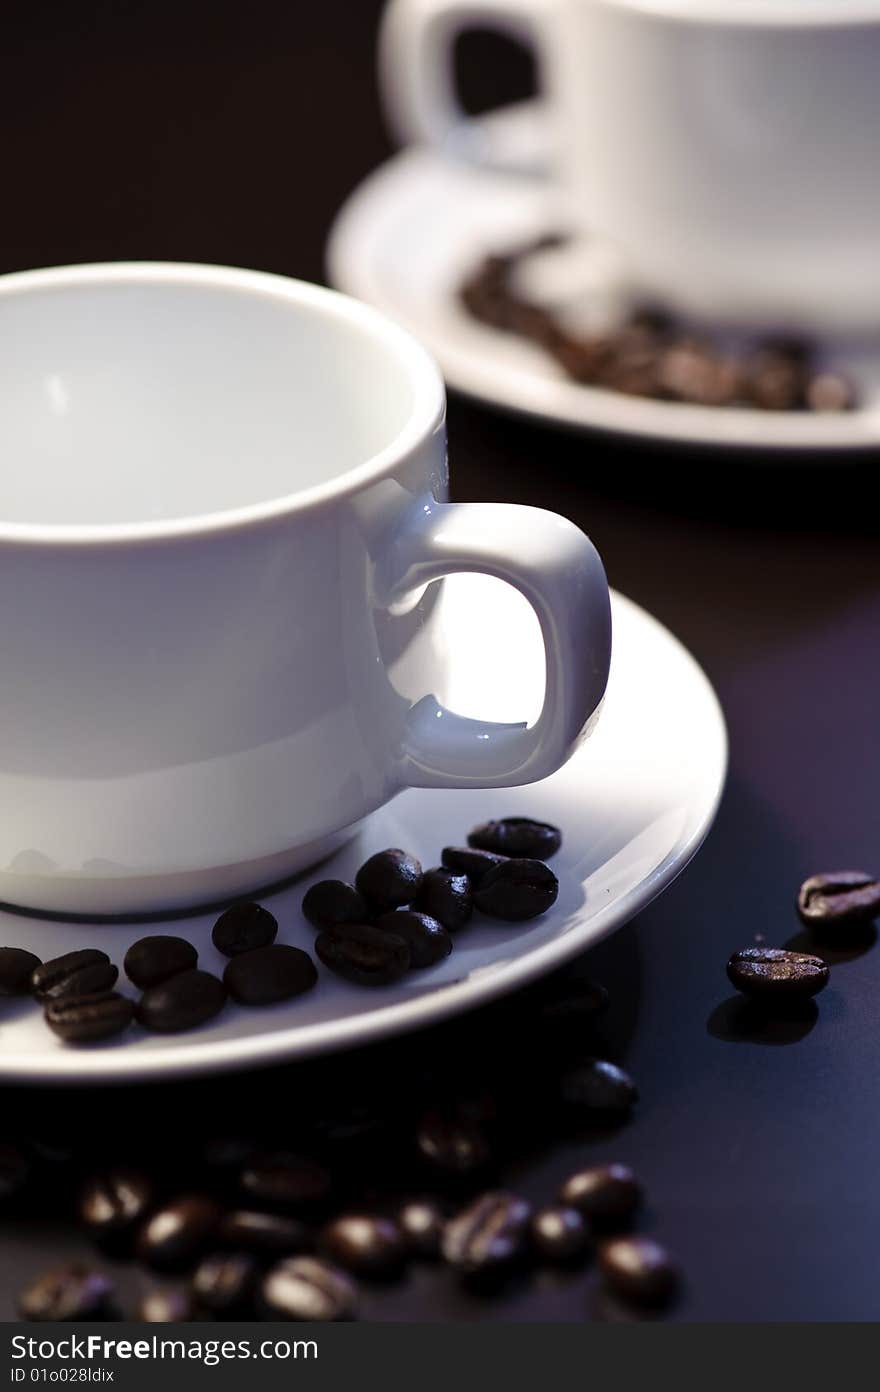 An image of coffee beans. An image of coffee beans